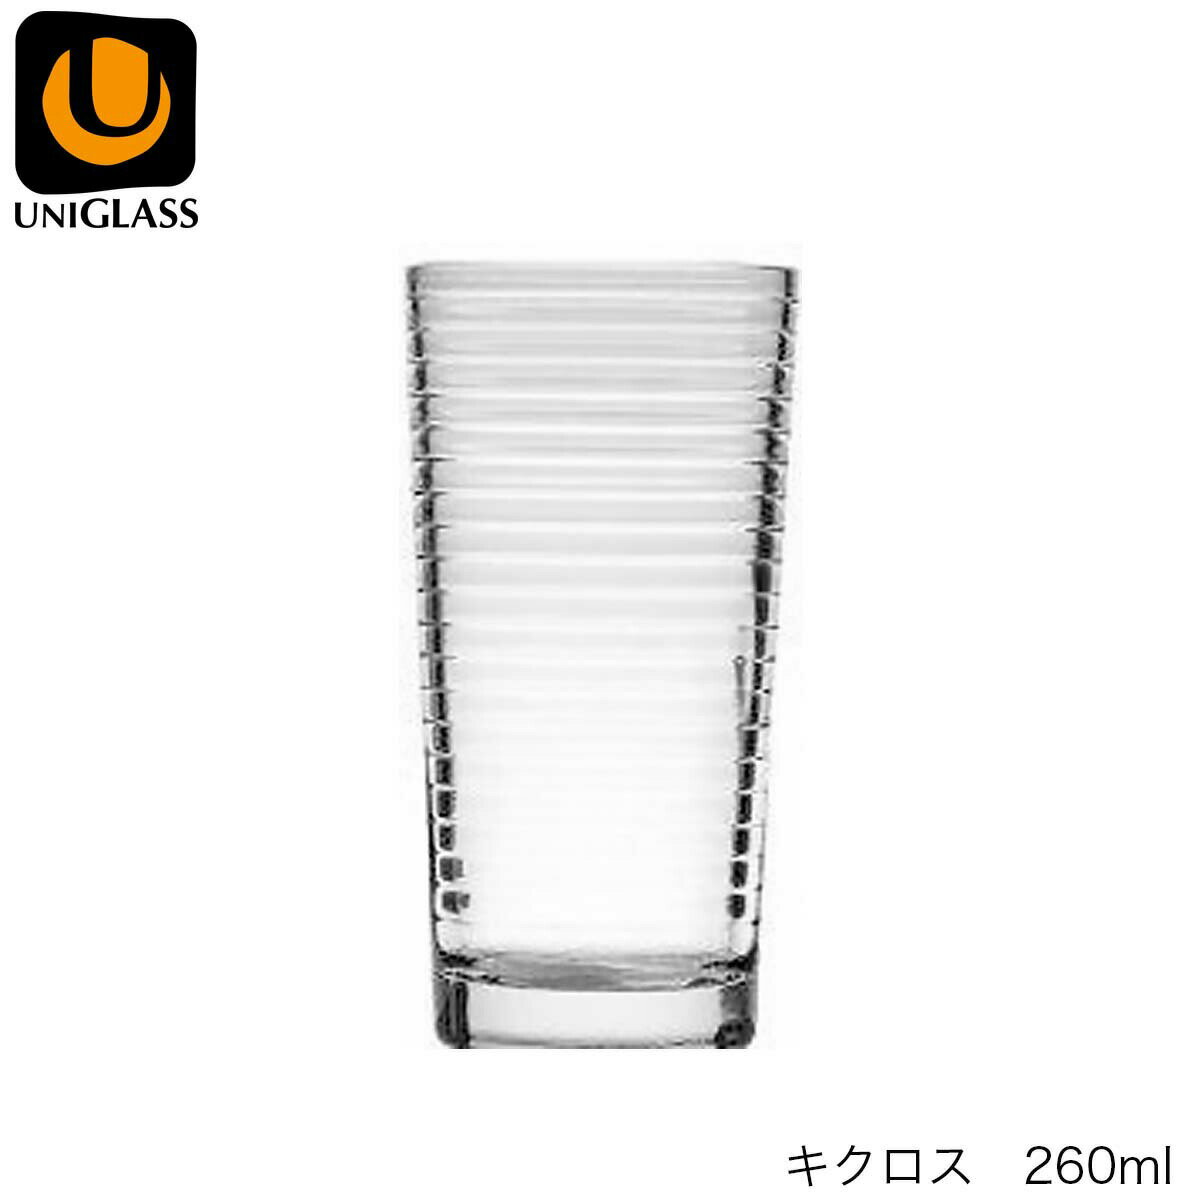 UNIGLASS ユニグラス キクロス 260ml 5個